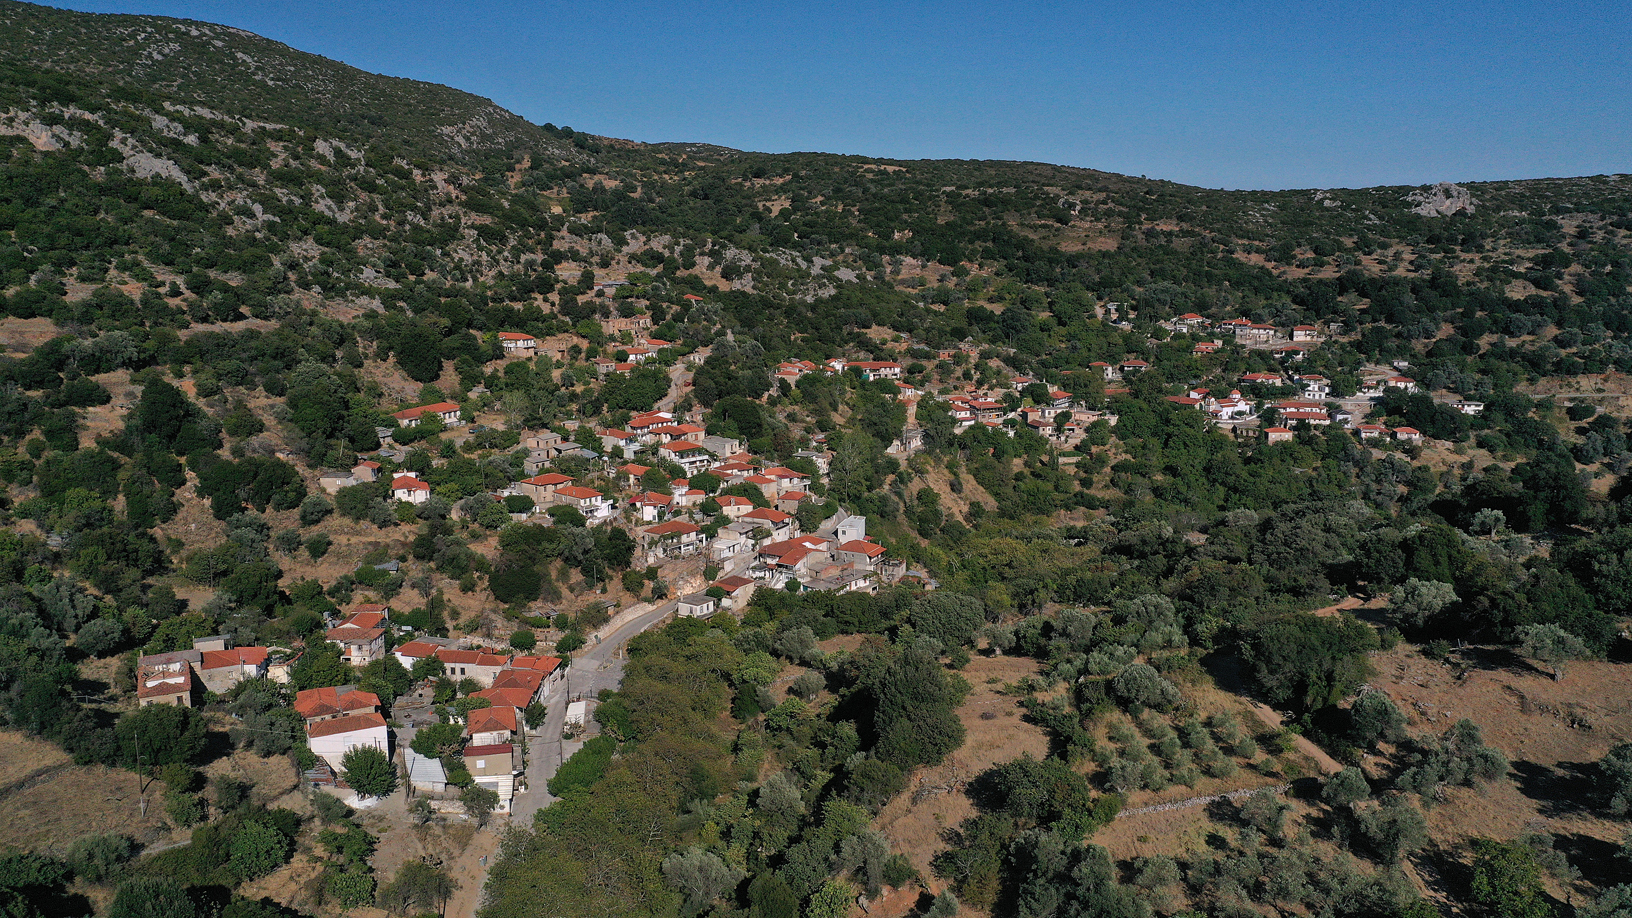 Χωριό Θαρούνια. Φωτογραφία: ©Βασίλης Συκάς, για τον Δήμο Κύμης-Αλιβερίου